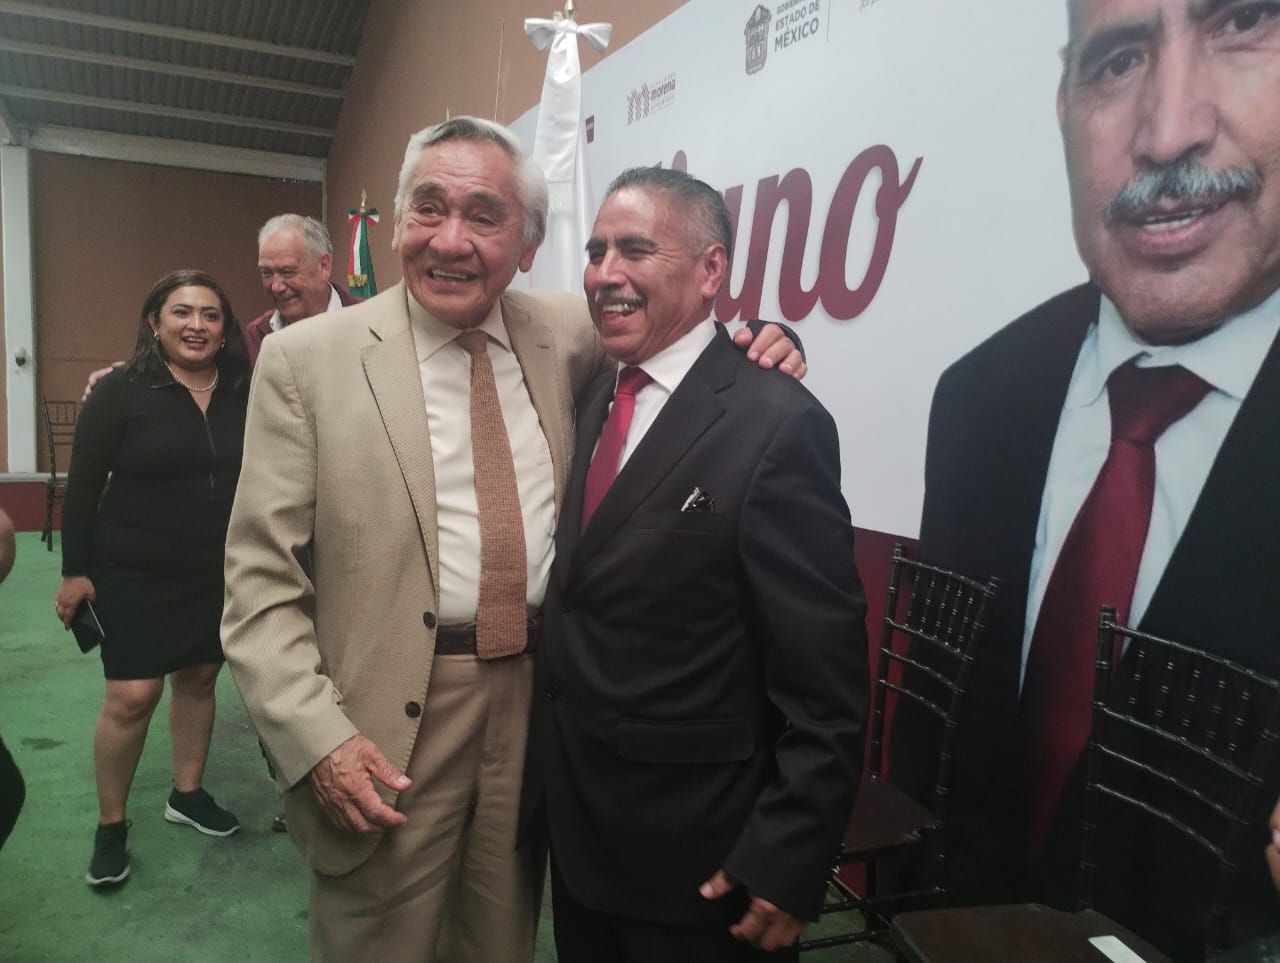 Felicito al diputado Emiliano Aguirre Cruz por su excelente trabajo
 Chimalhuacán: Jorge García Sánchez